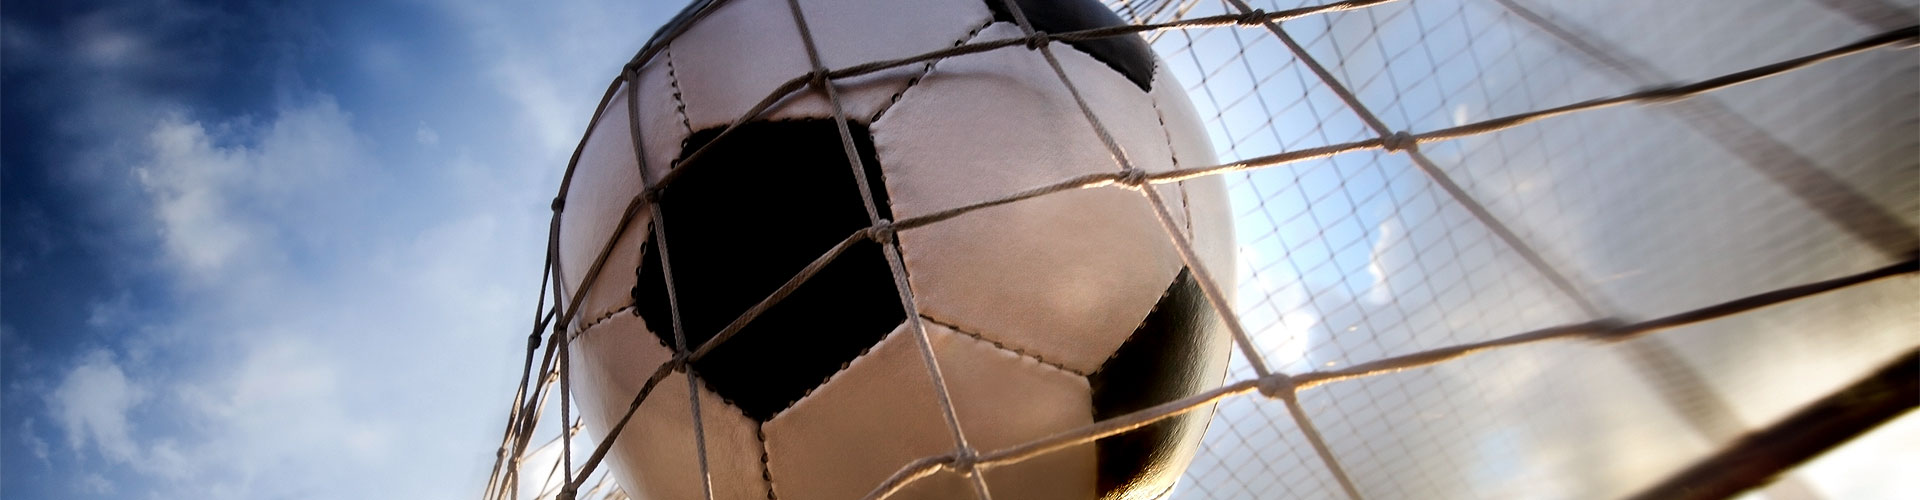 Ver la Eurocopa 2020 de fútbol en vivo en Sansor